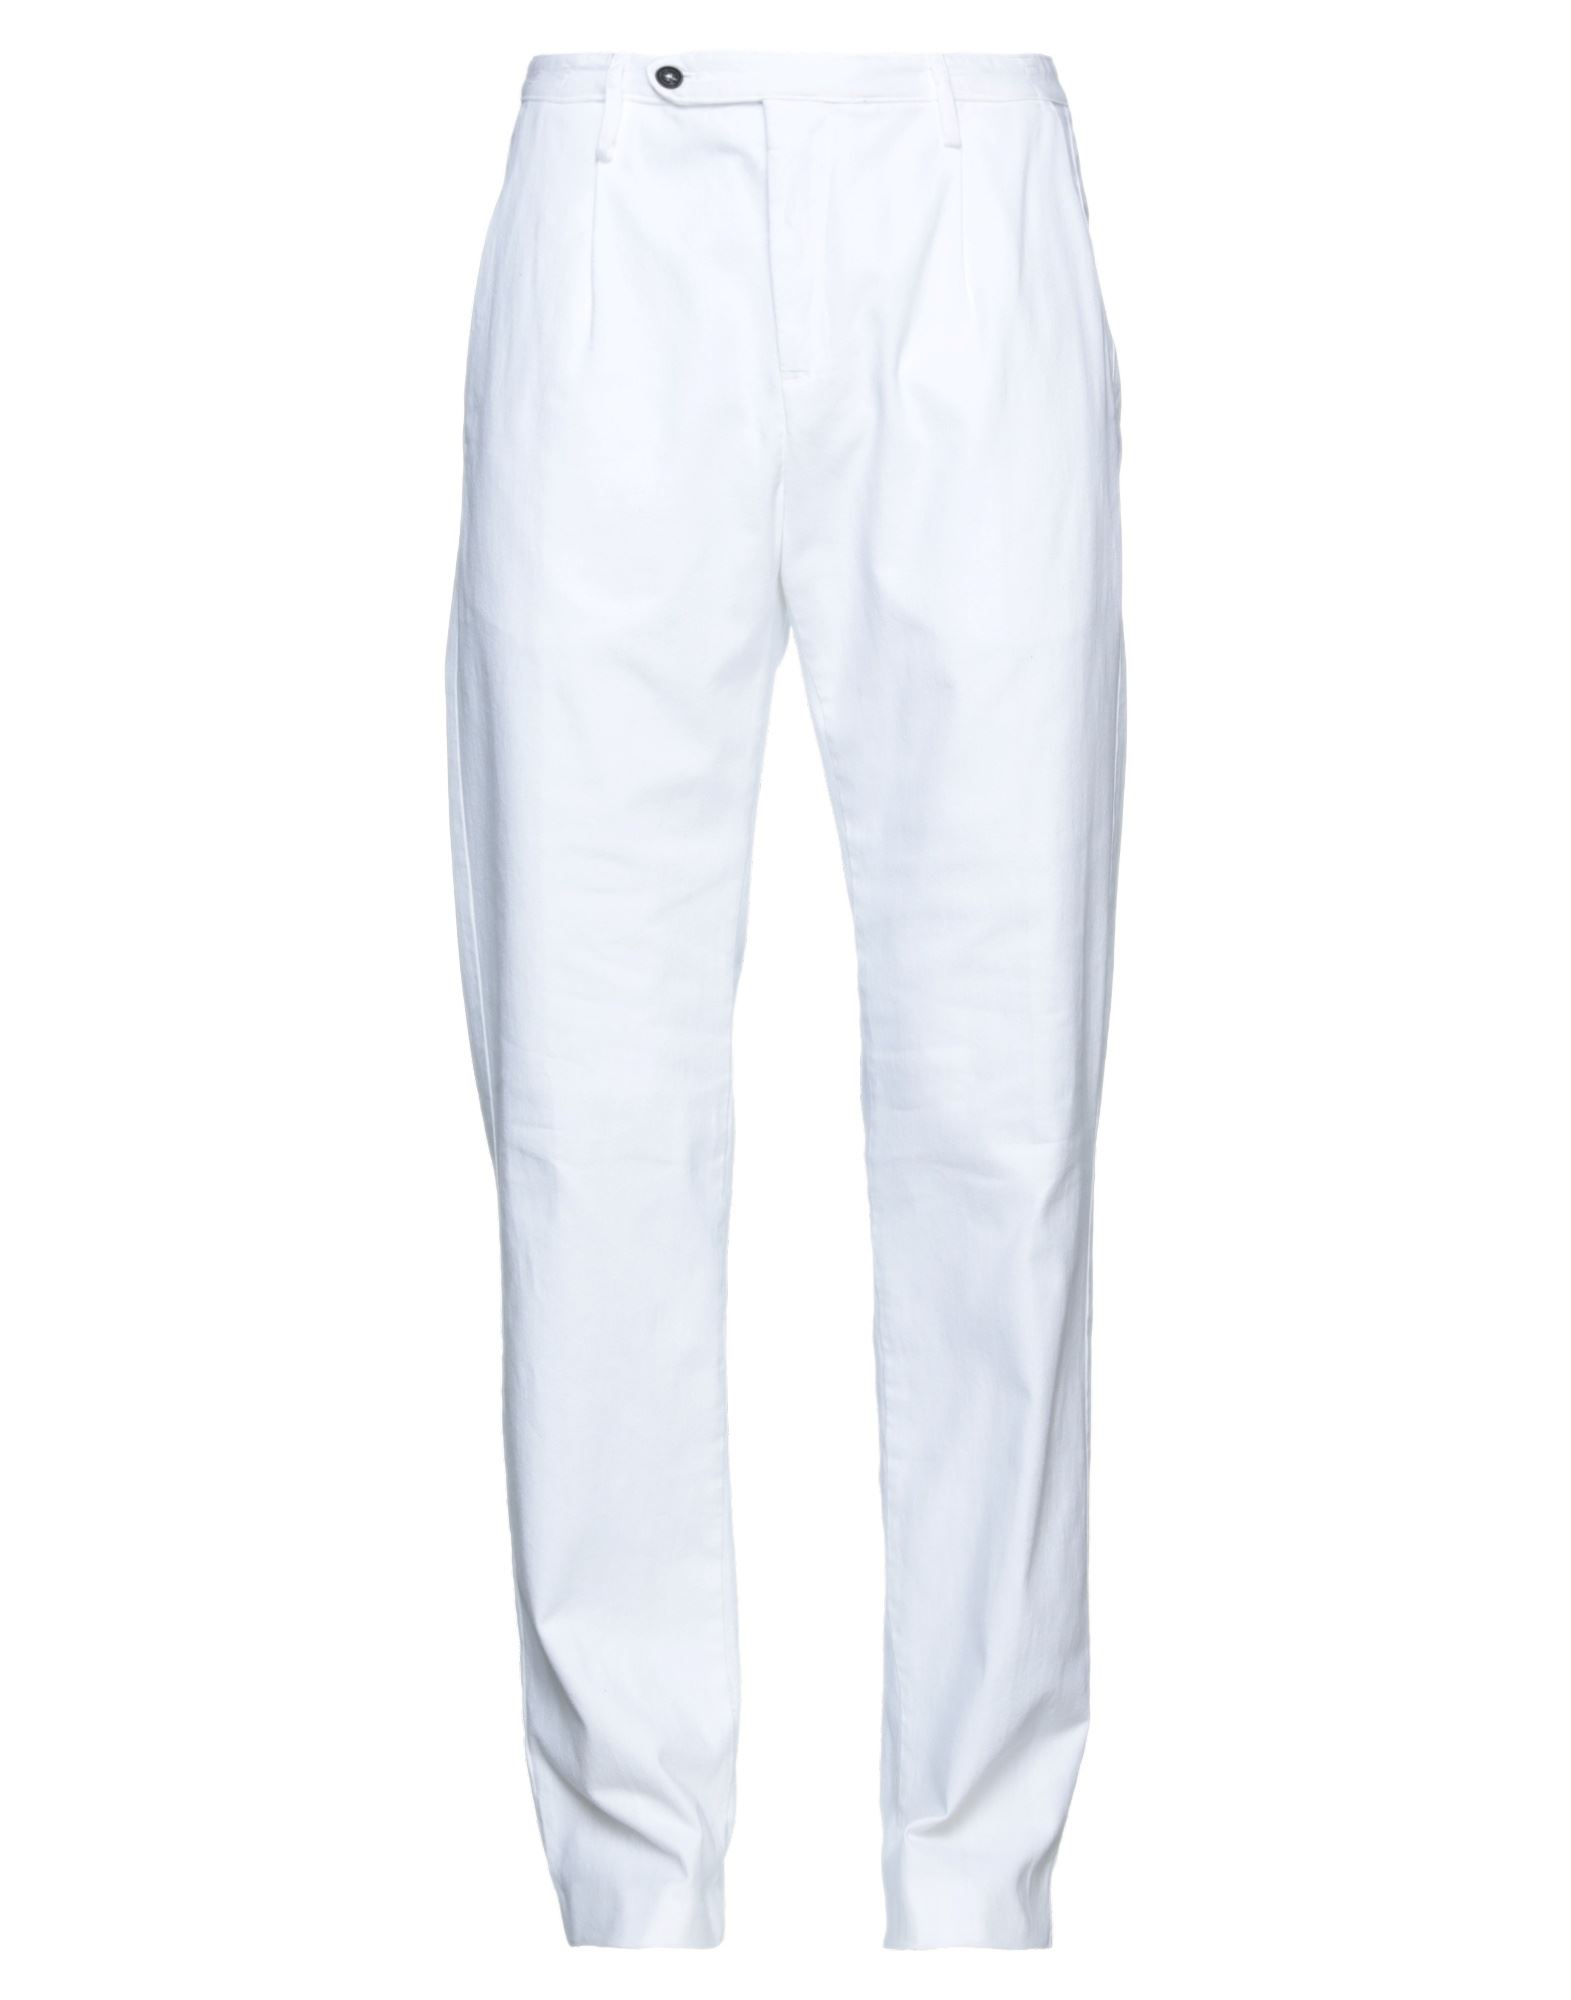 Massimo Alba Man Pants White Size 34 Cotton, Cashmere, Elastane